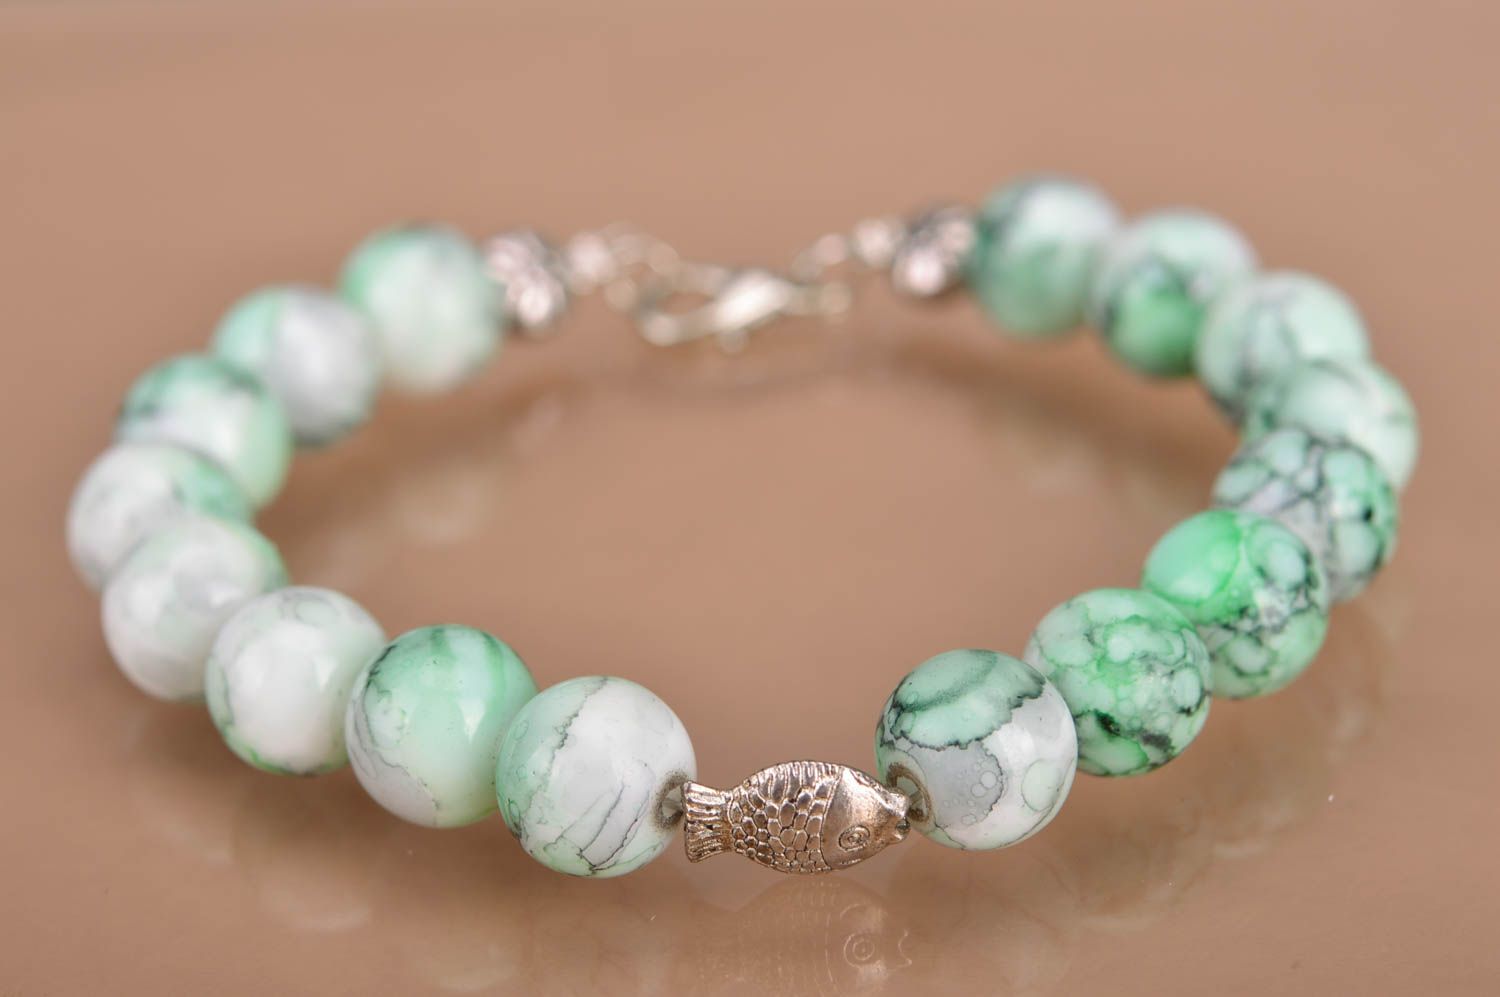 Handmade designer beaded green wrist bracelet with metal fish insert for women photo 2